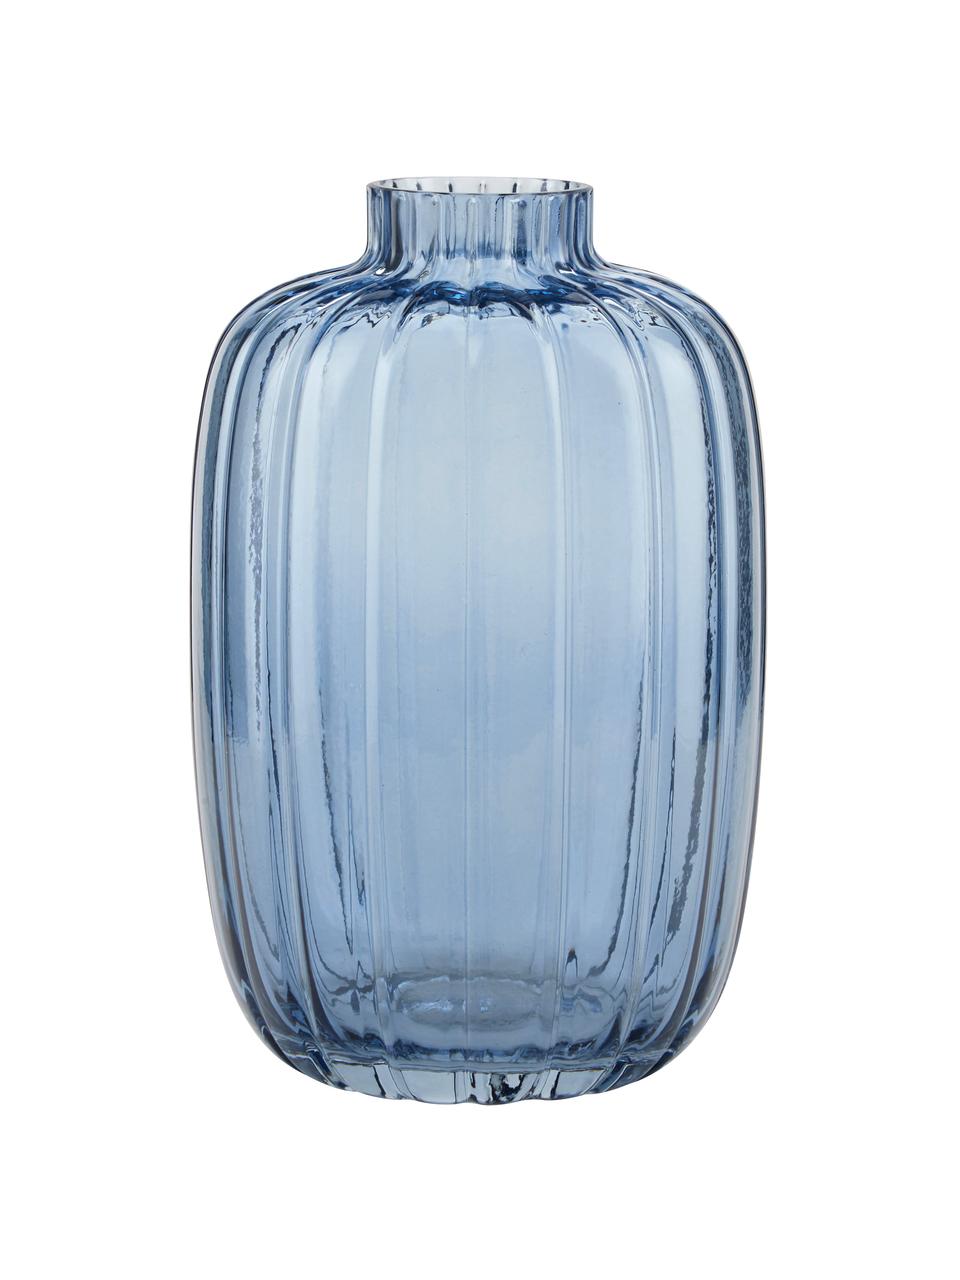 Glas-Vase Groove in Blau, Glas, Blau, Ø 13 x H 20 cm